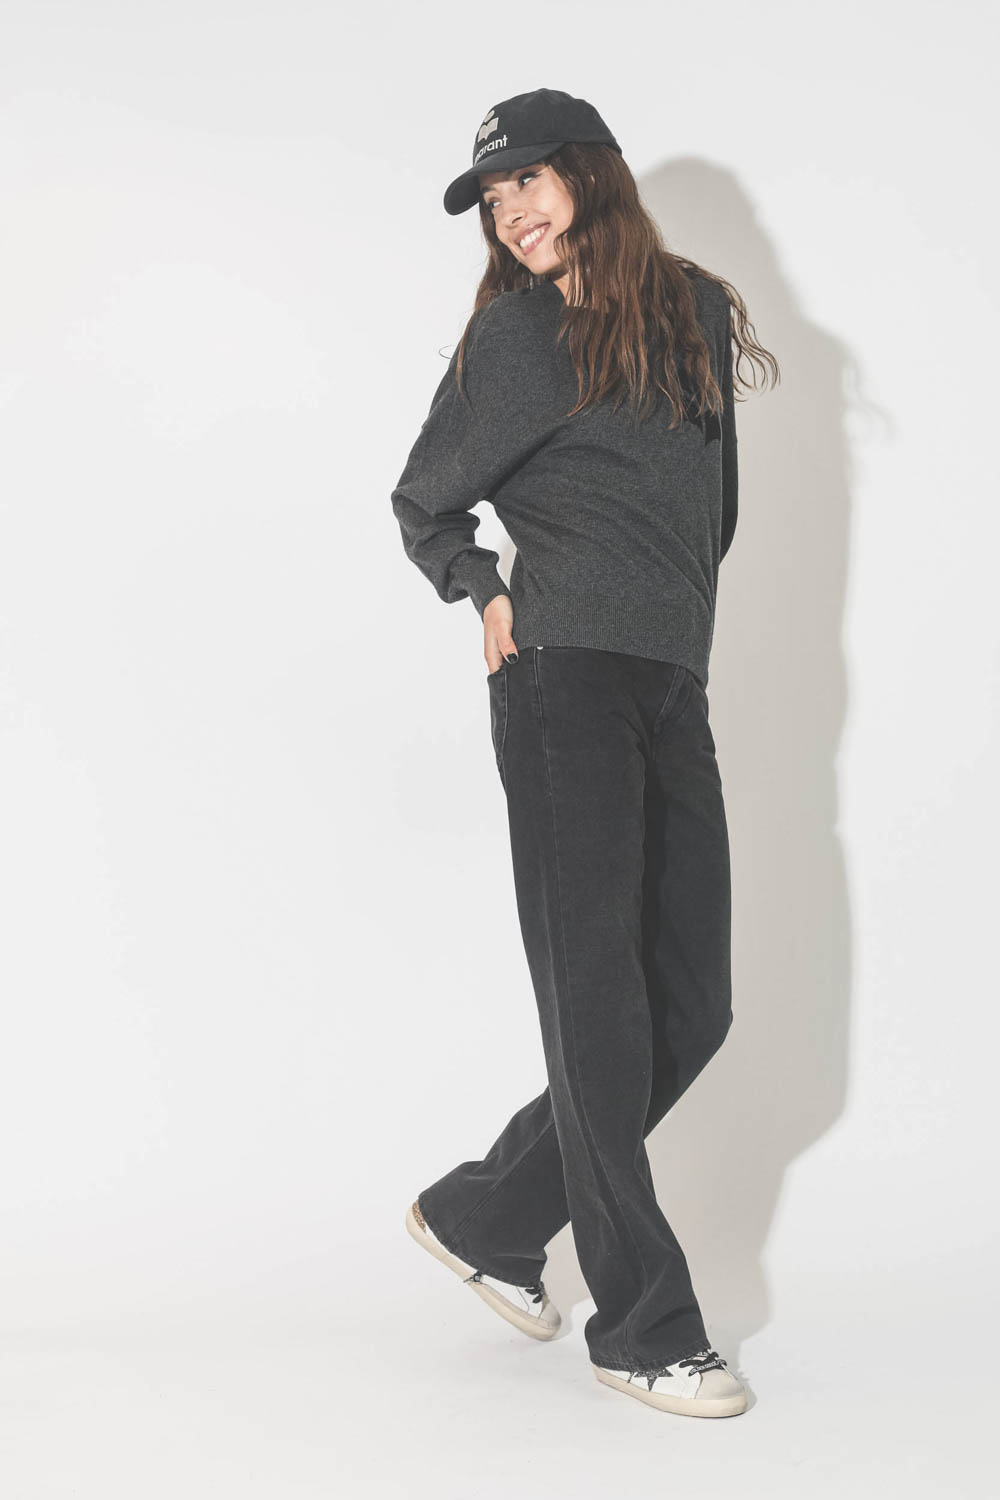 Jeans droit taille haute denim noir 100% coton non extensible Belvira Isabel Marant Etoile. Porté de profil.